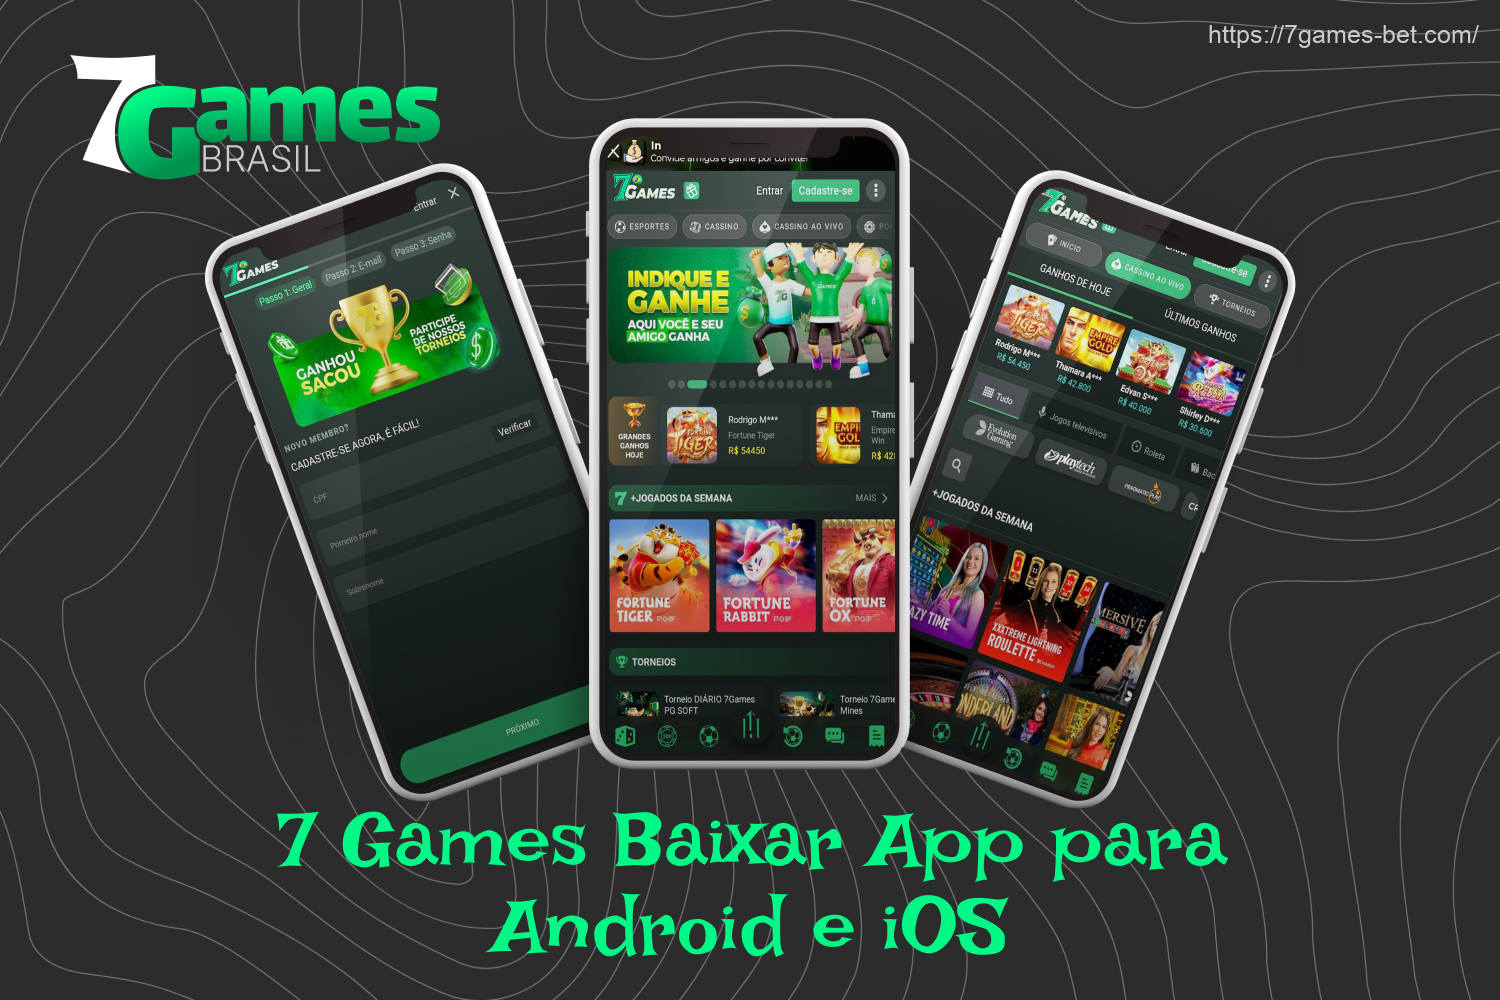 O aplicativo 7Games é repleto de recursos, permitindo que os jogadores do Brasil apostem legalmente em jogos esportivos e ciberesportivos, joguem caça-níqueis e jogos de cassino ao vivo